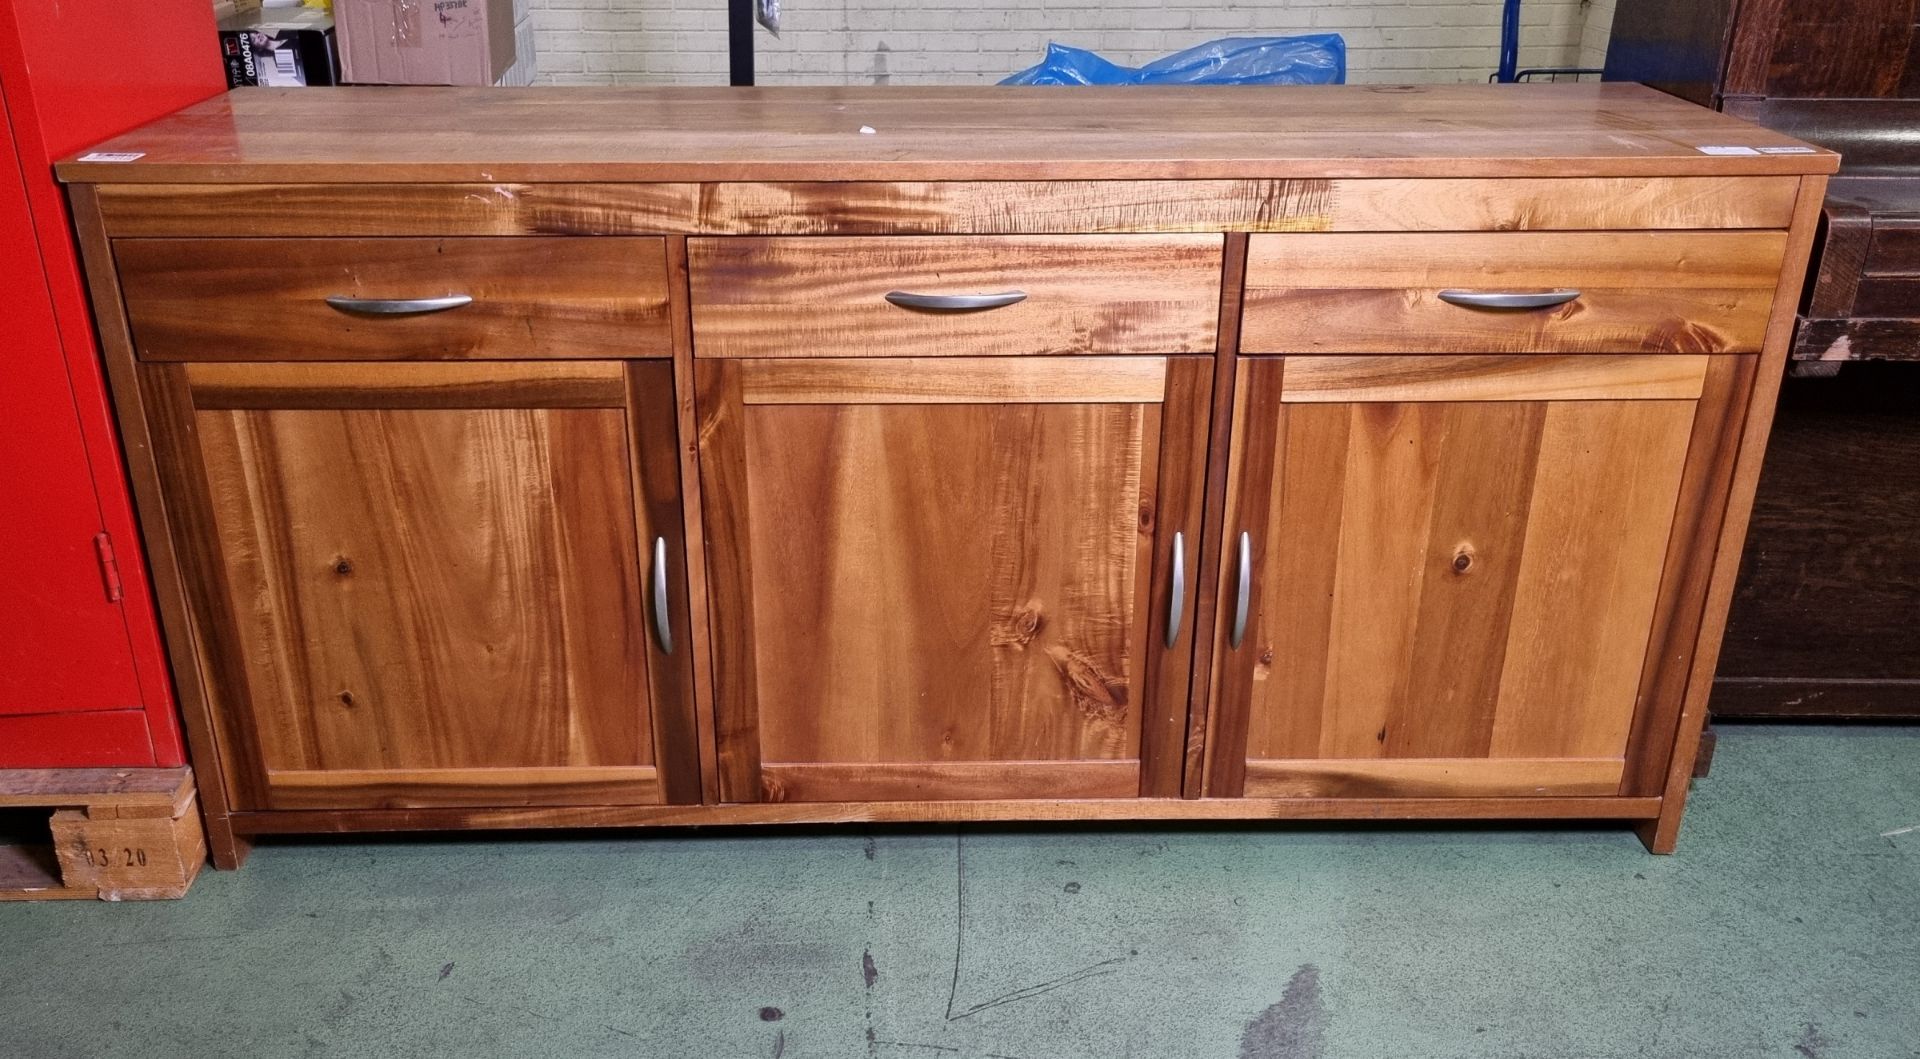 3 door 3 drawer wooden cabinet - W 1750 x D 500 x H 840mm - IN NEED OF REPAIR